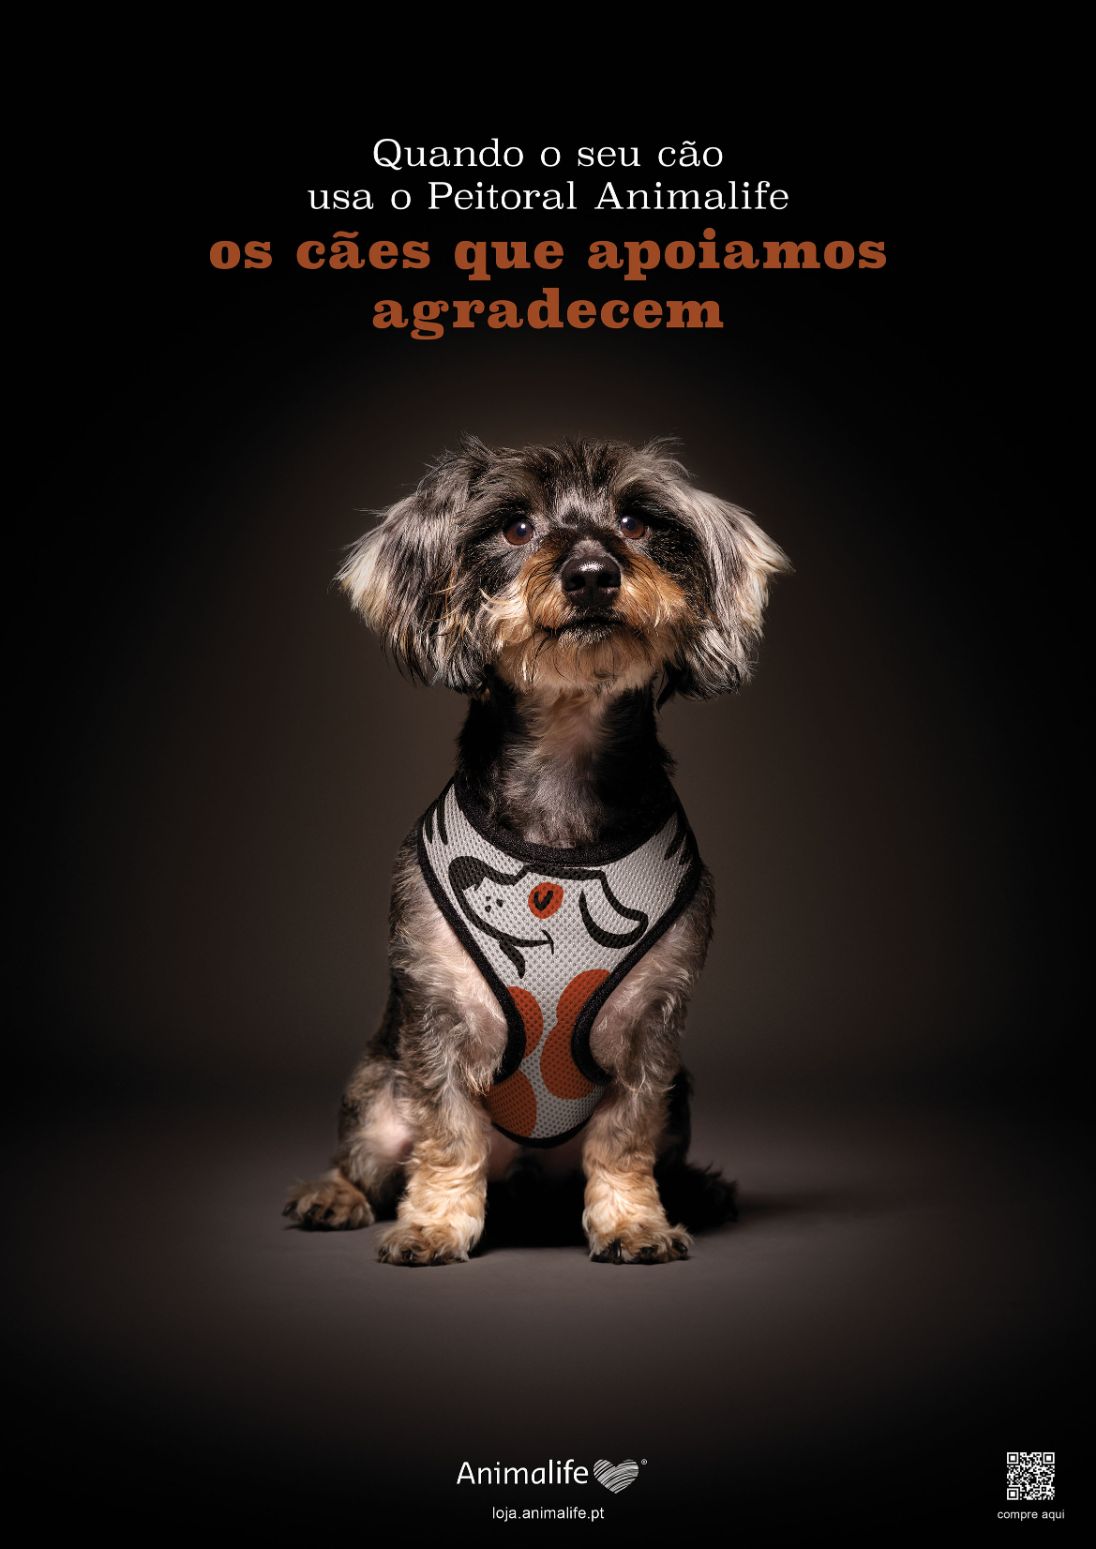 Animalife e FCB lançam campanha “Peitoral Salva-Vidas” para promover a segurança animal e apoiar famílias vulneráveis